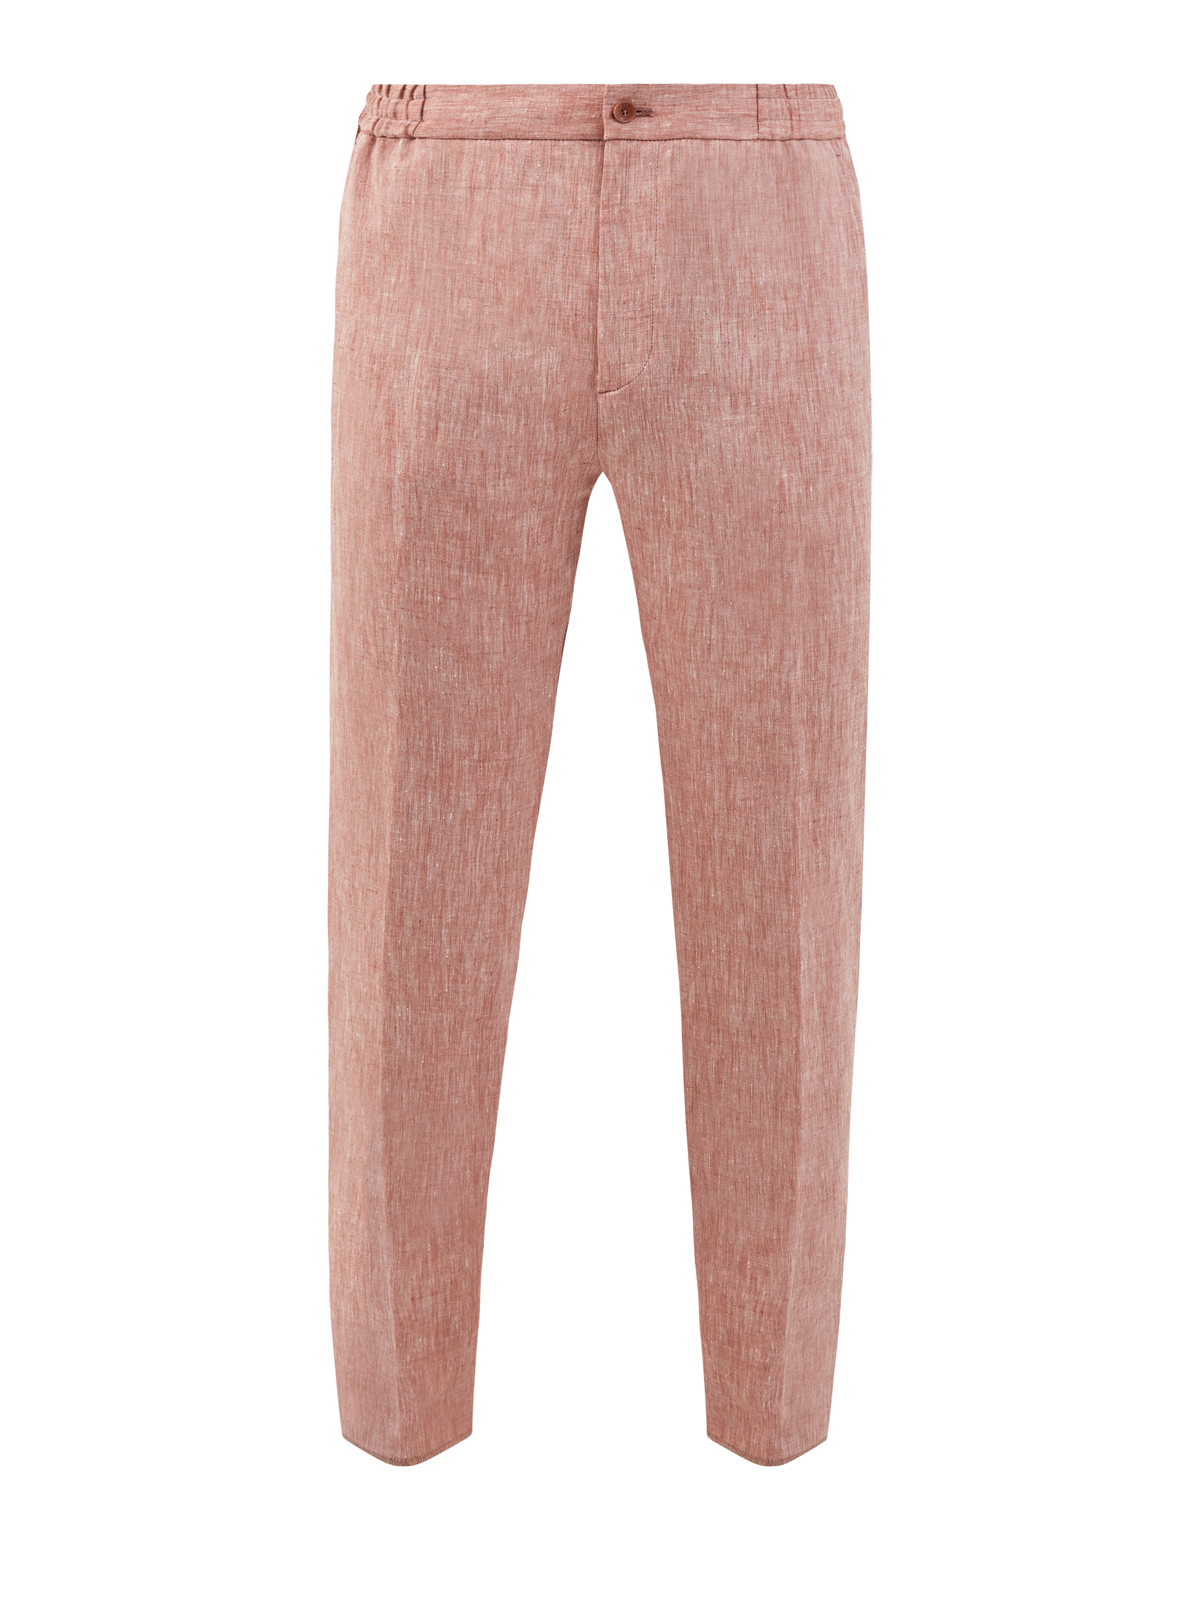 Льняные брюки с эластичной вставкой на поясе ETRO розового цвета